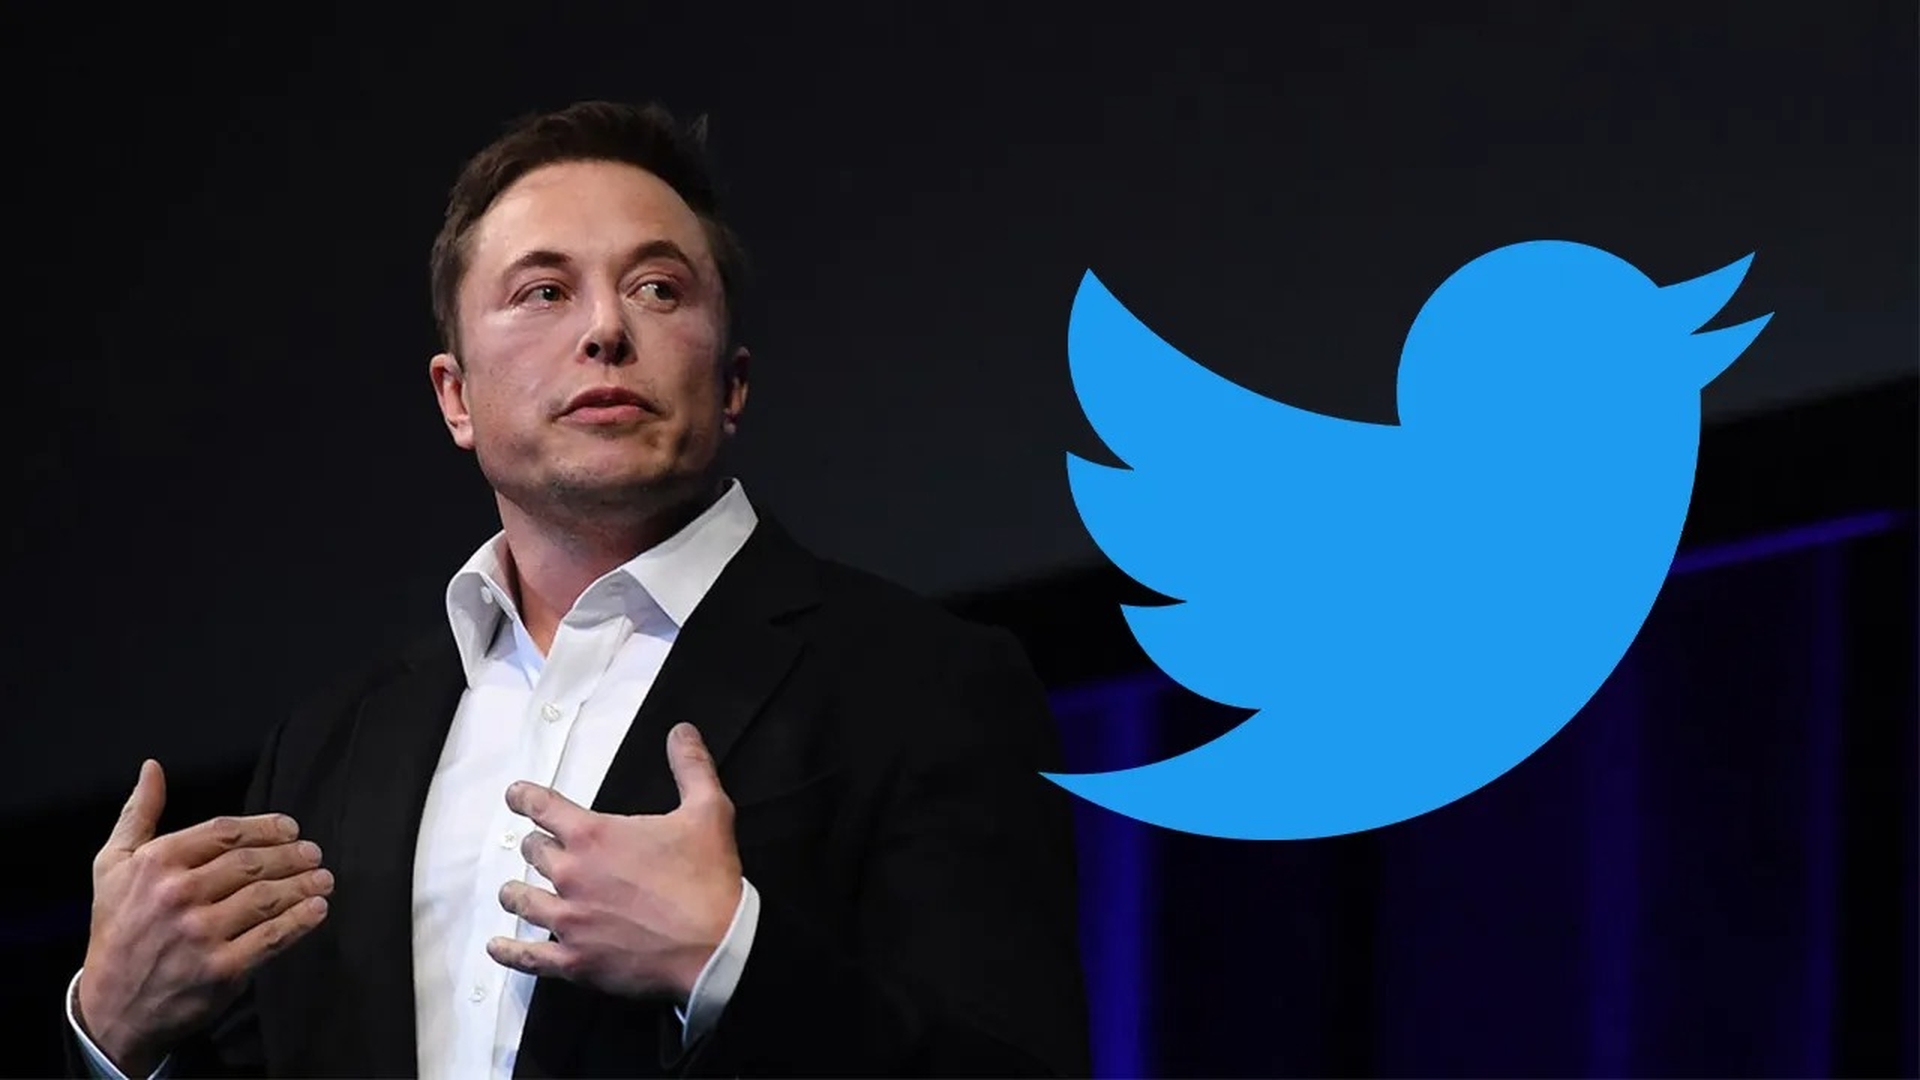 Der Twitter-Deal mit Elon Musk kommt möglicherweise nicht zustande